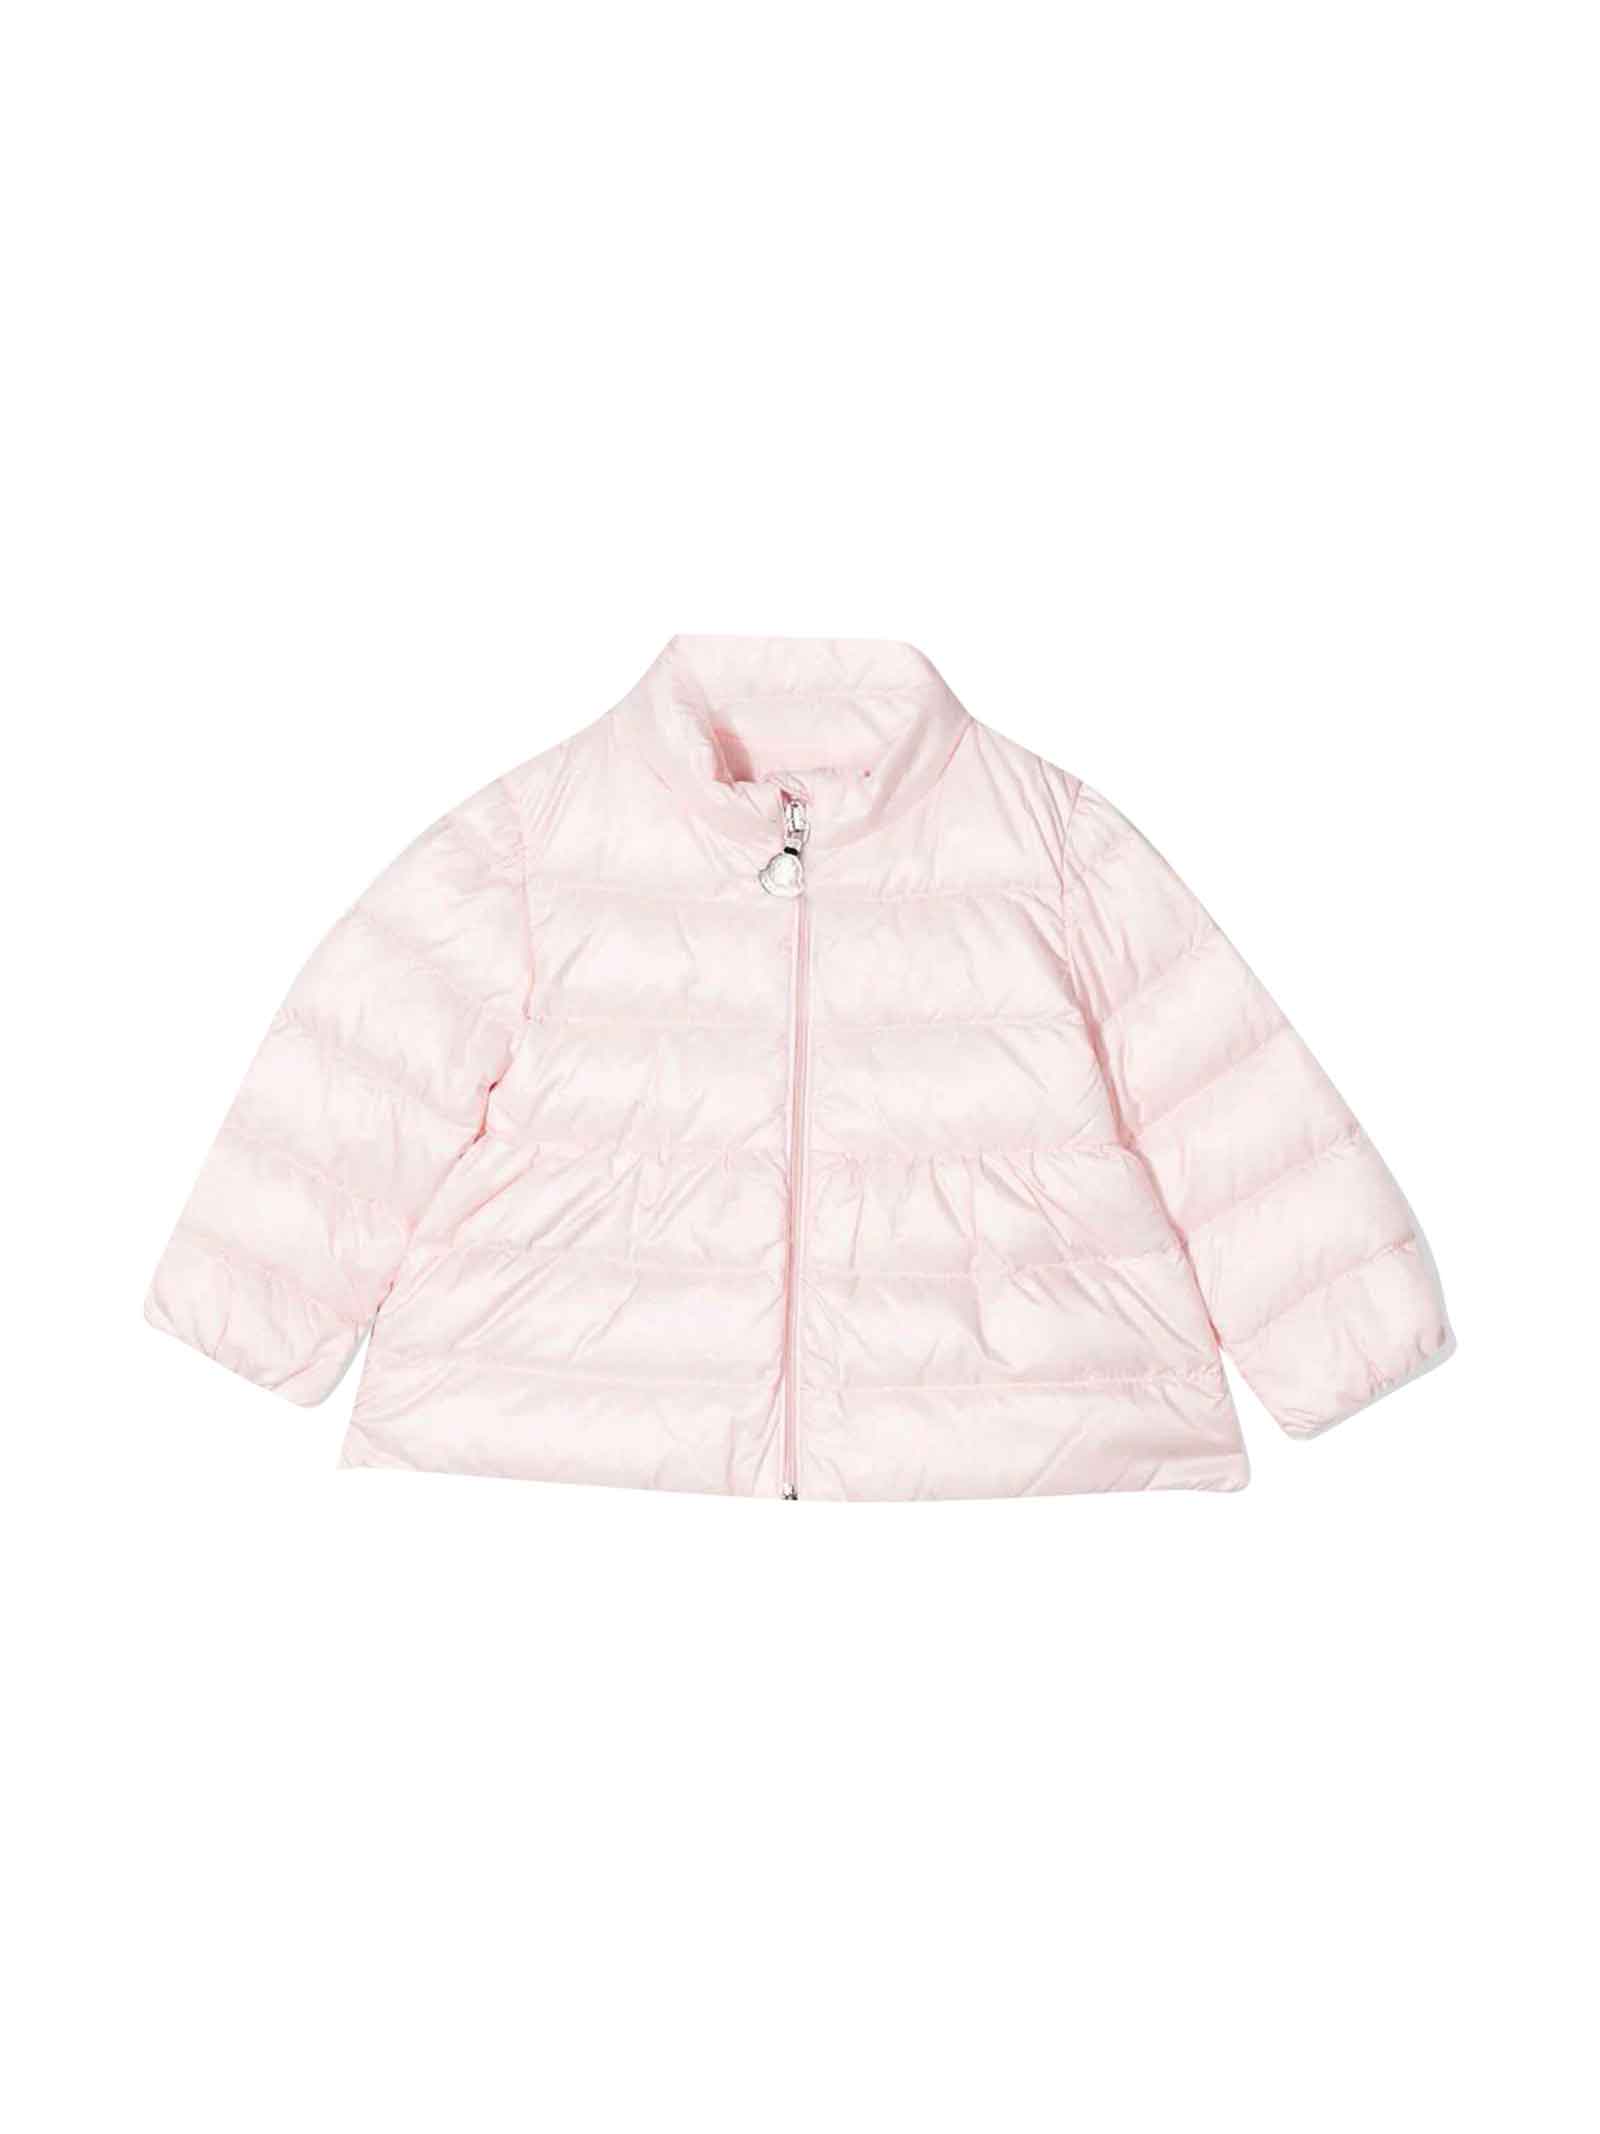 Moncler Enfant Baby Girl Pink Down Jacket